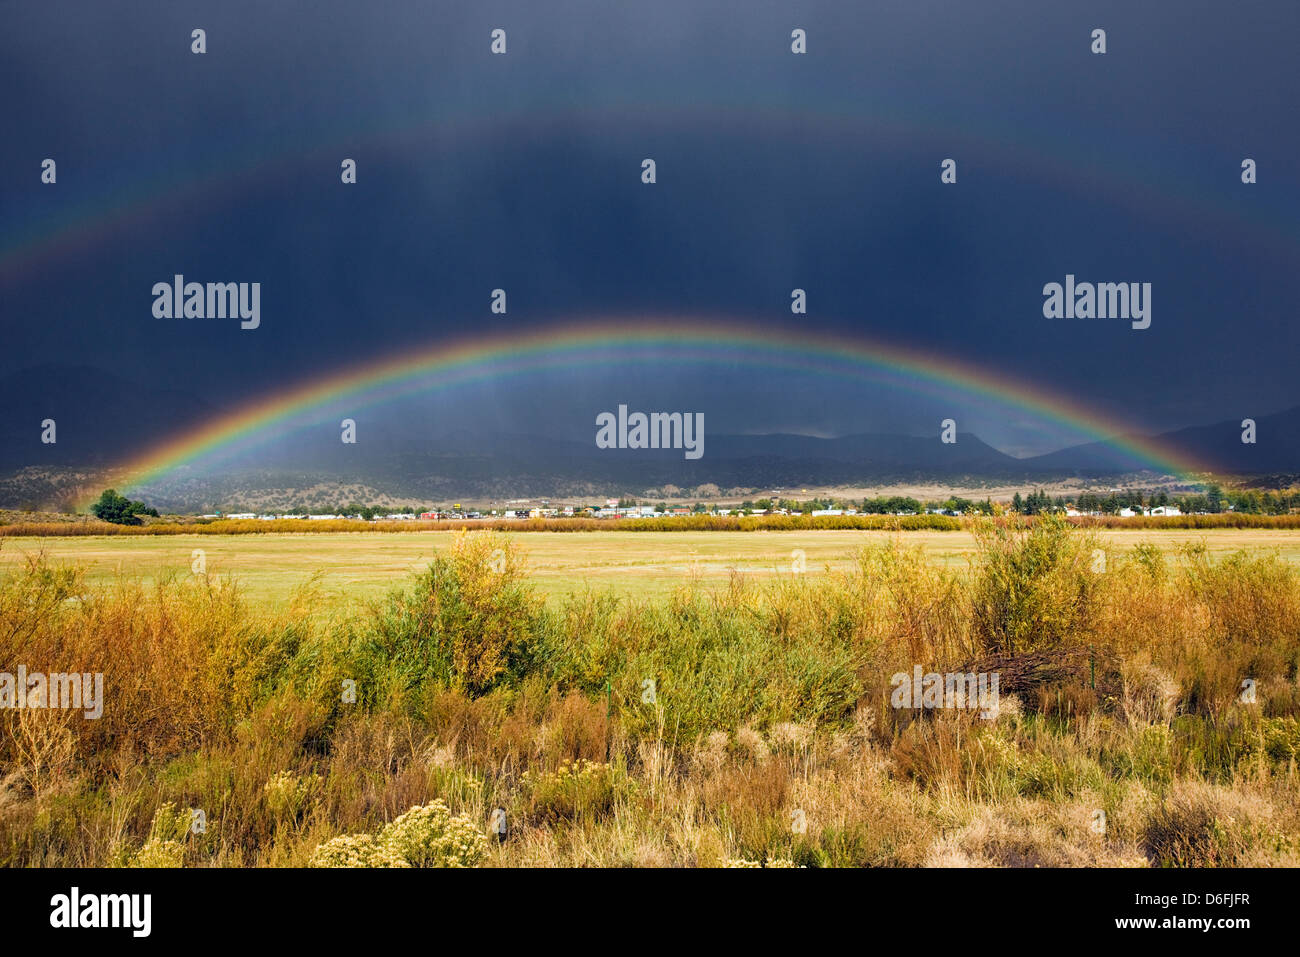 Rainbow sopra il piccolo paese di montagna di salida, Colorado, STATI UNITI D'AMERICA Foto Stock